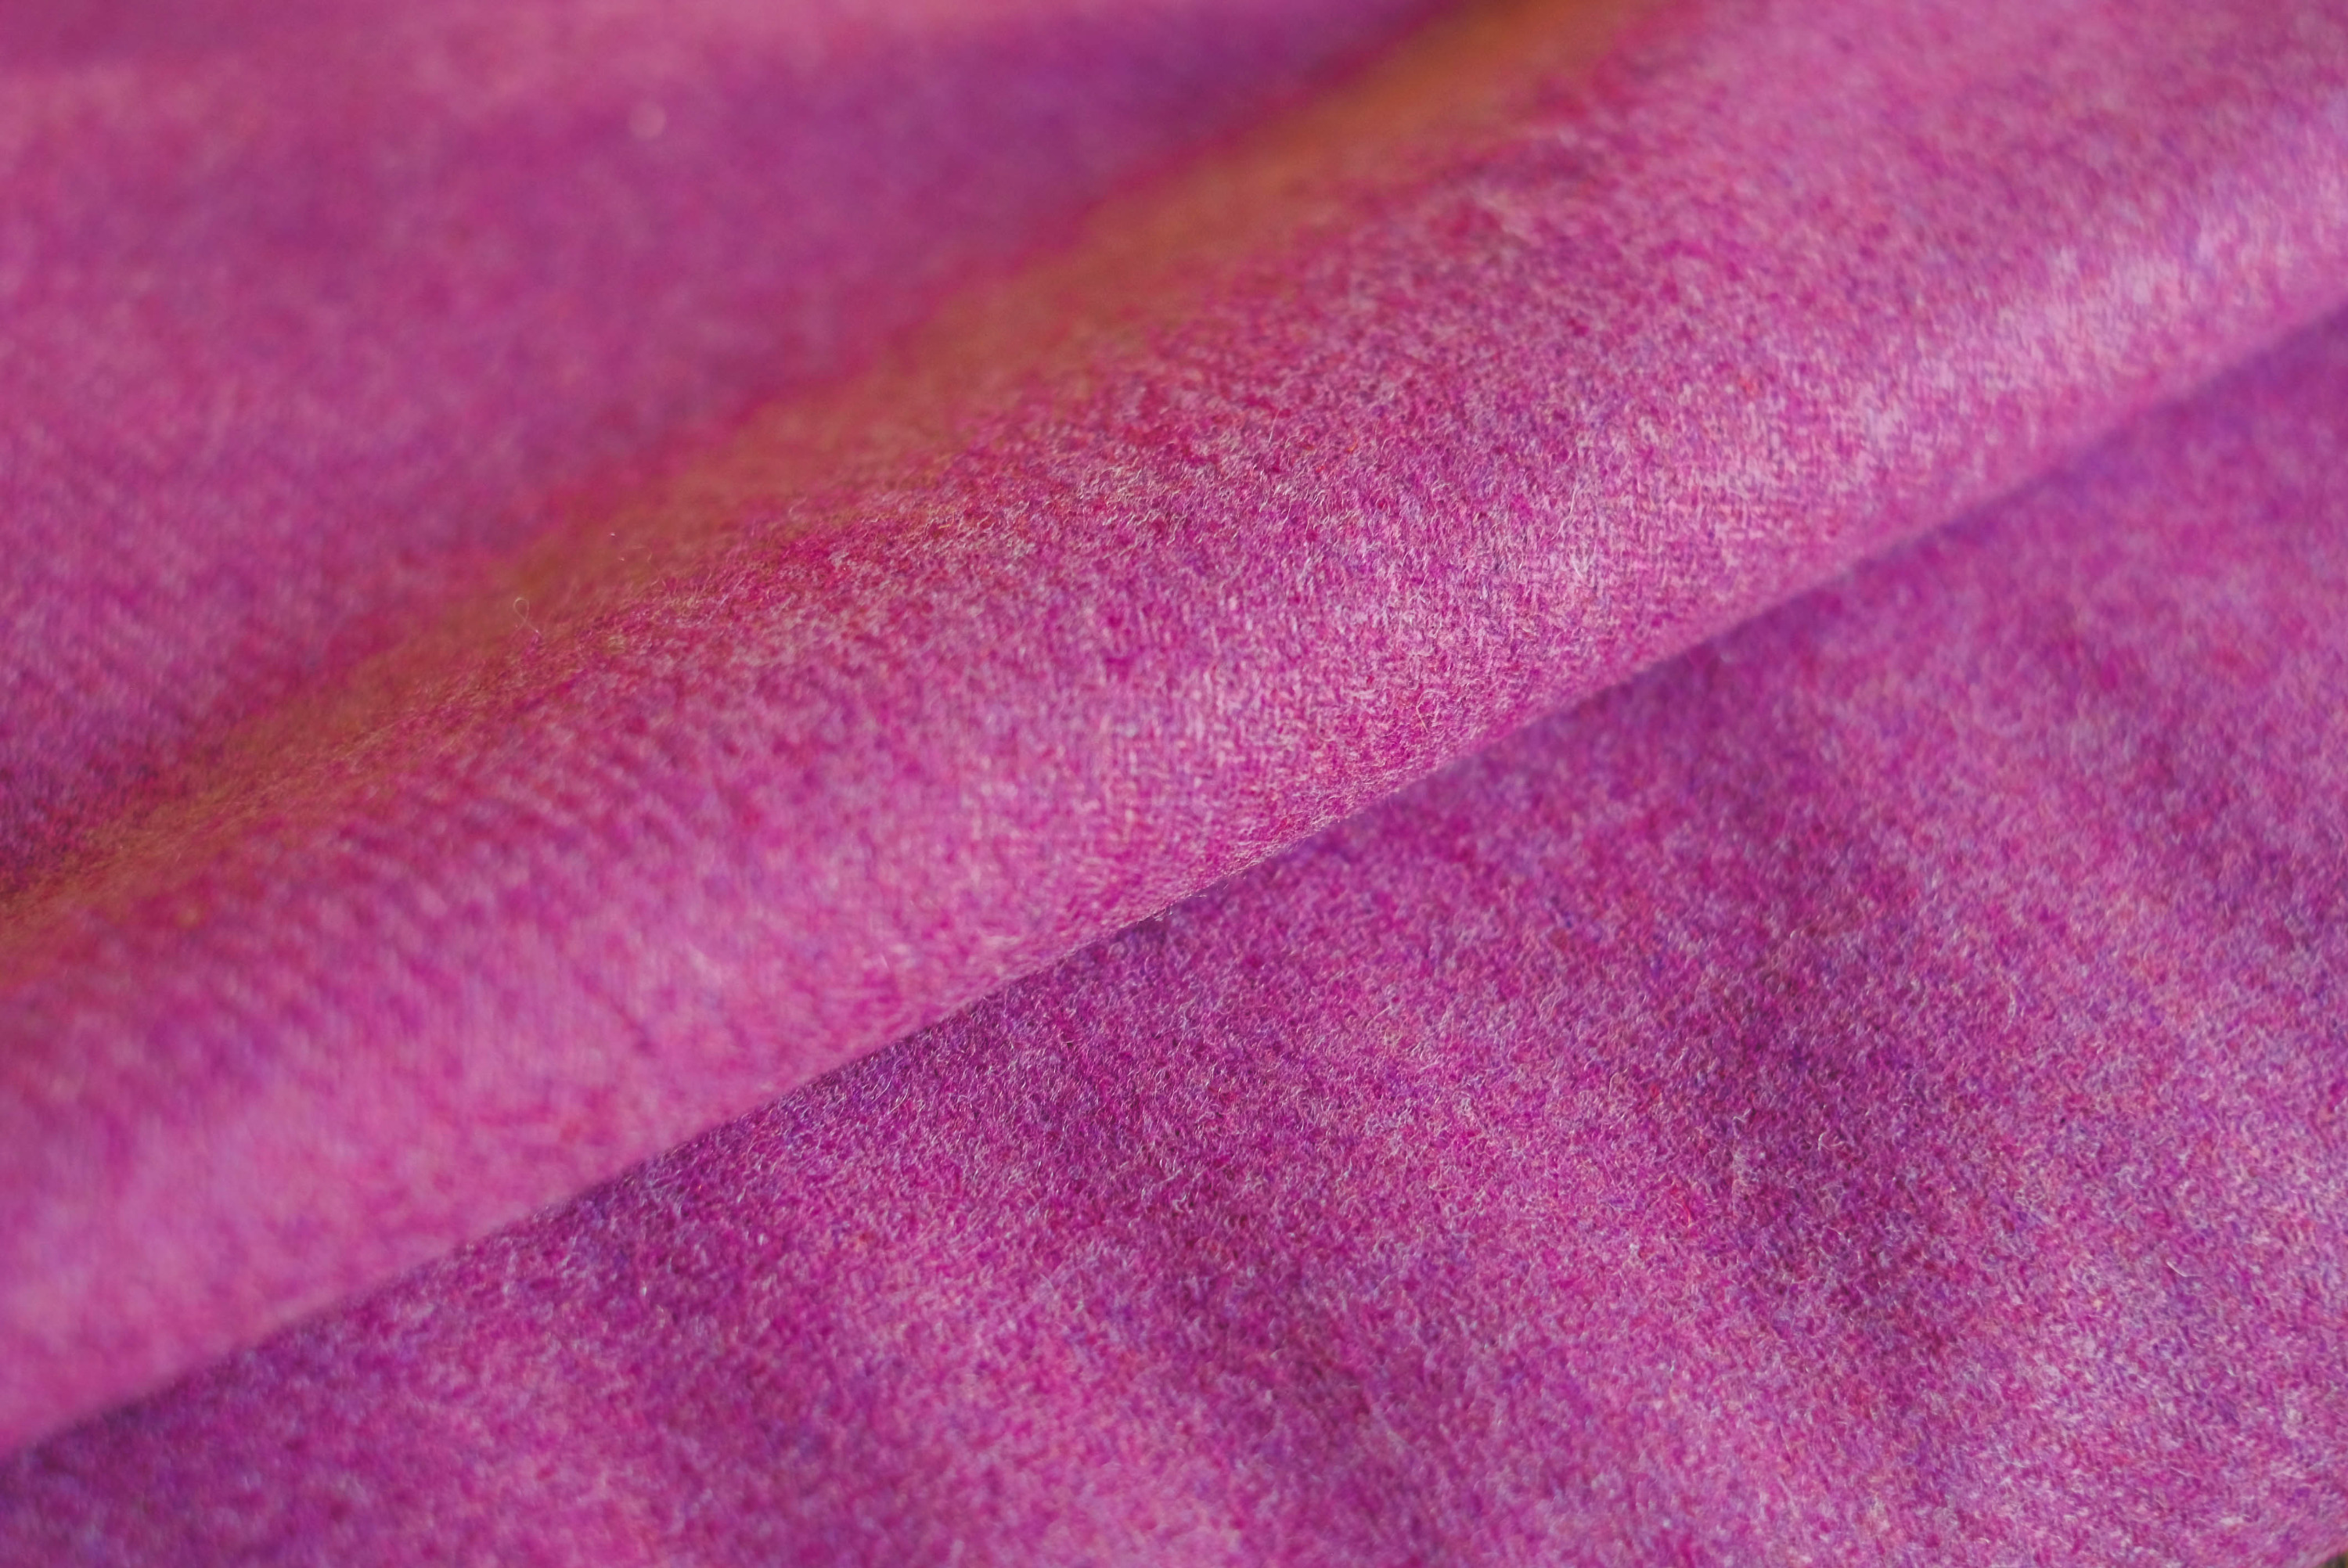 German twill -pink purple 817